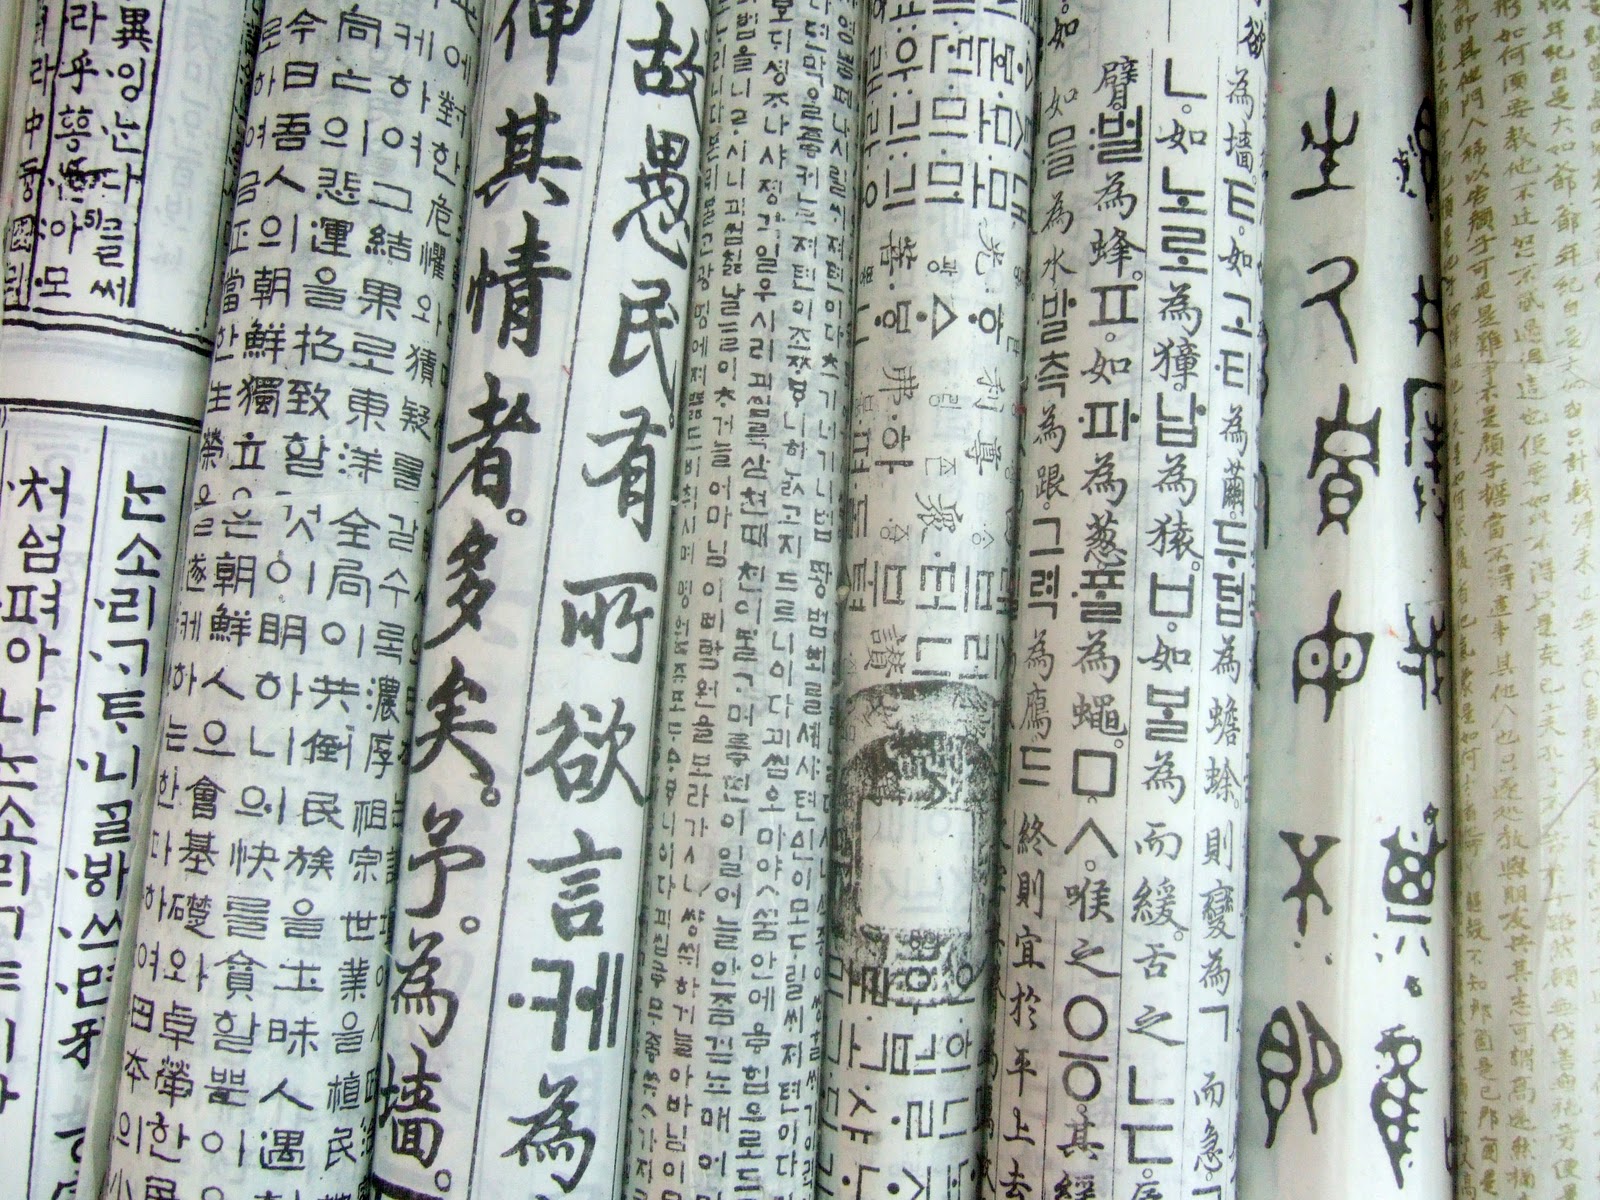 http://4.bp.blogspot.com/_mwIQ-5Qenas/TL0R8fXnTOI/AAAAAAAAADM/Q6krH3C57Bk/s1600/Seoul-Korean-Hangul-Insadong-Papers.jpg